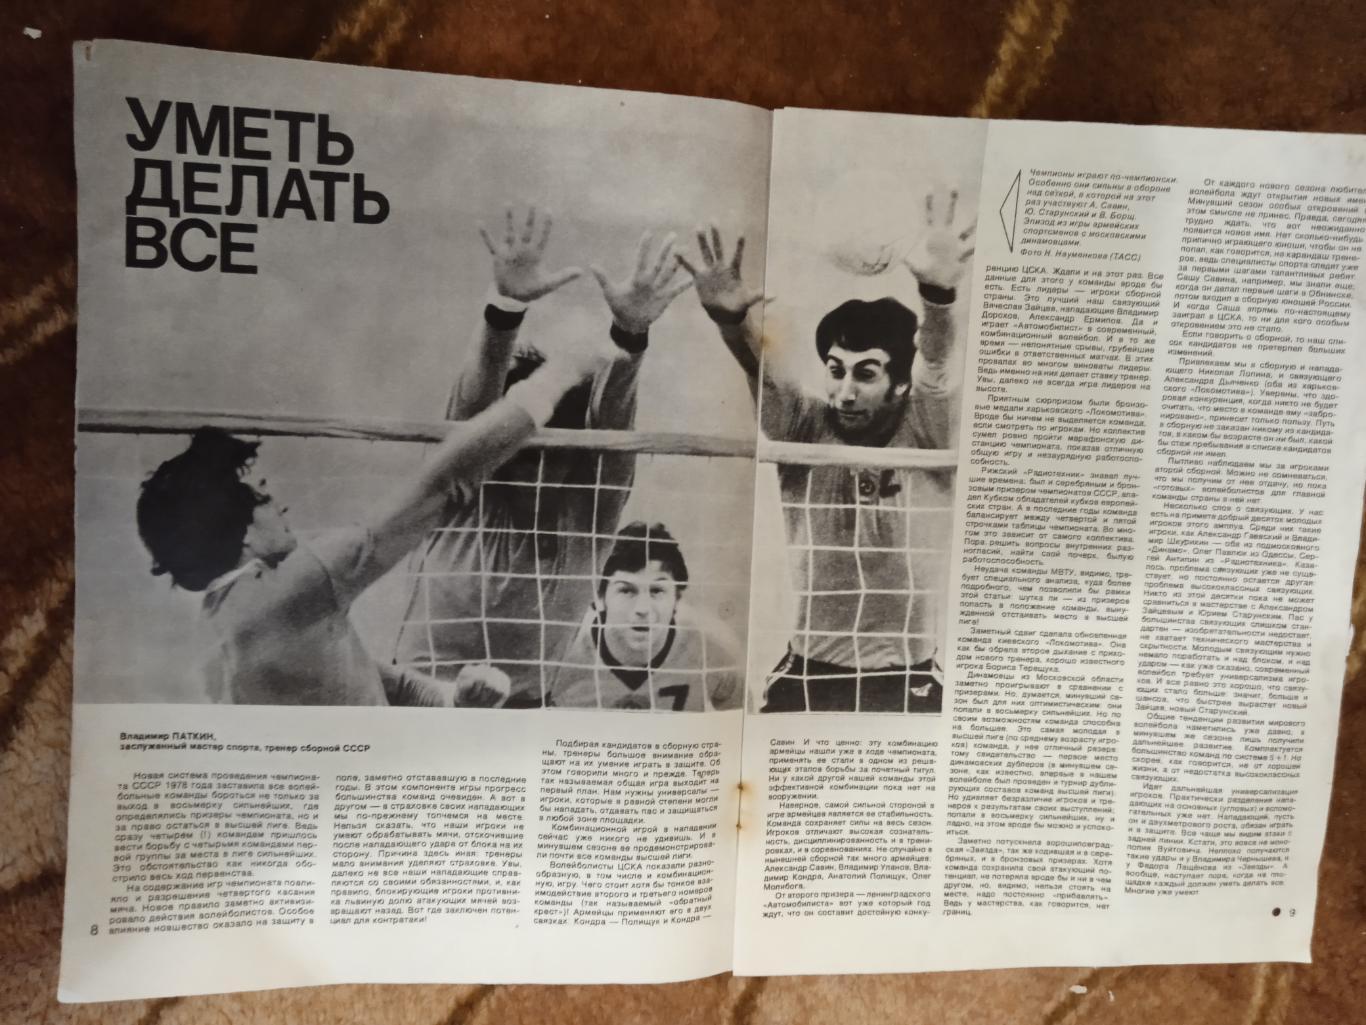 Журнал.Спортивные игры № 9 1978 г. Футбол,хоккей,волейбол.ЧМ 78.Аргентина. 2